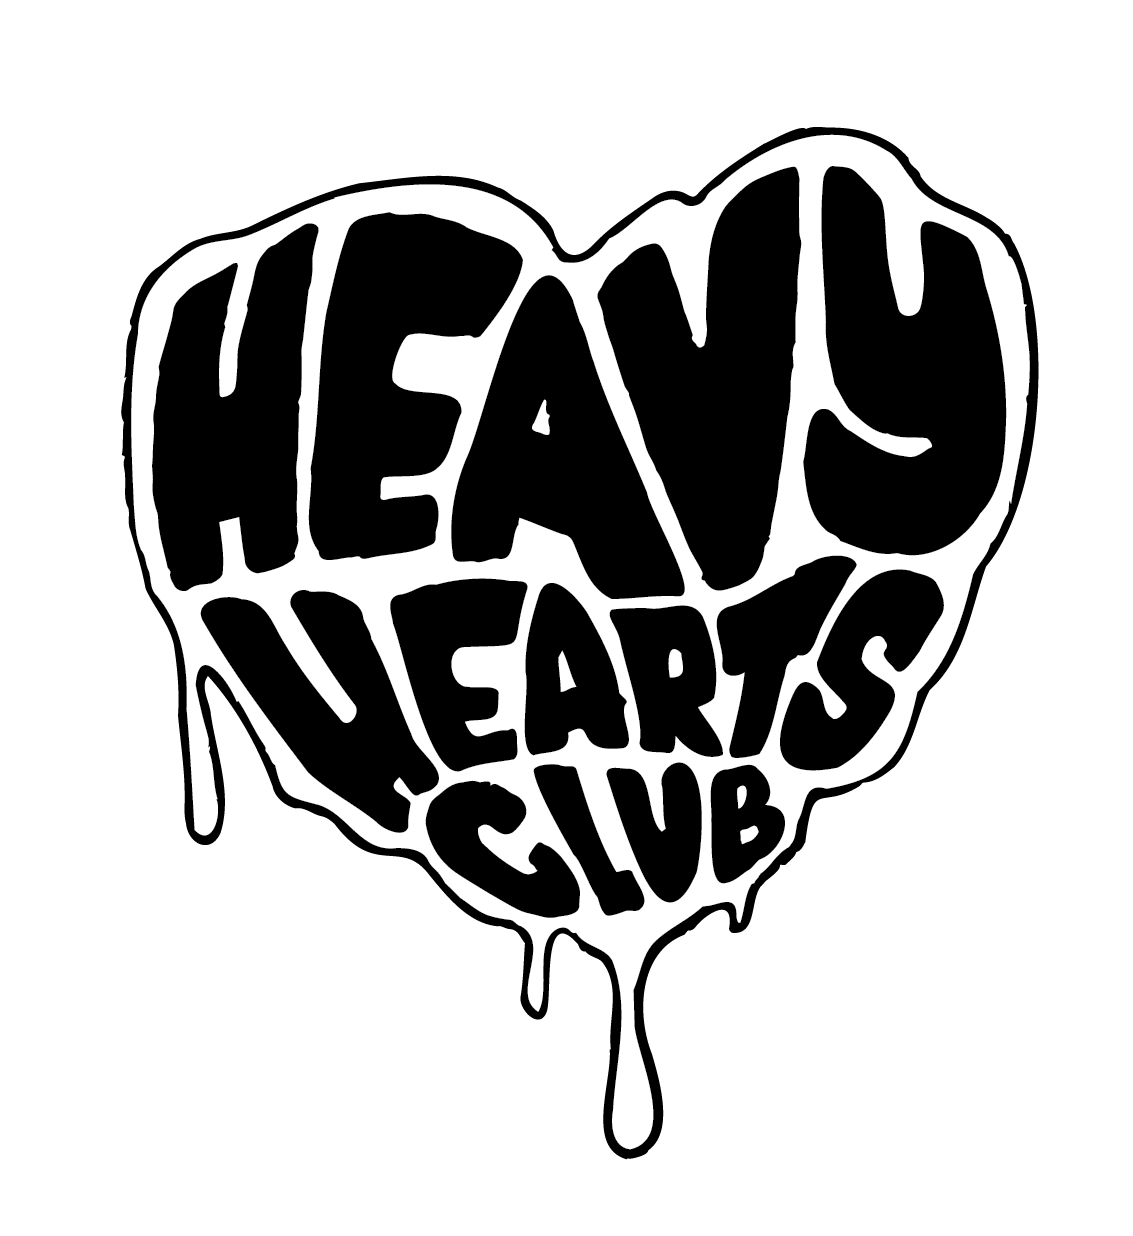 Heavy Hearts Club